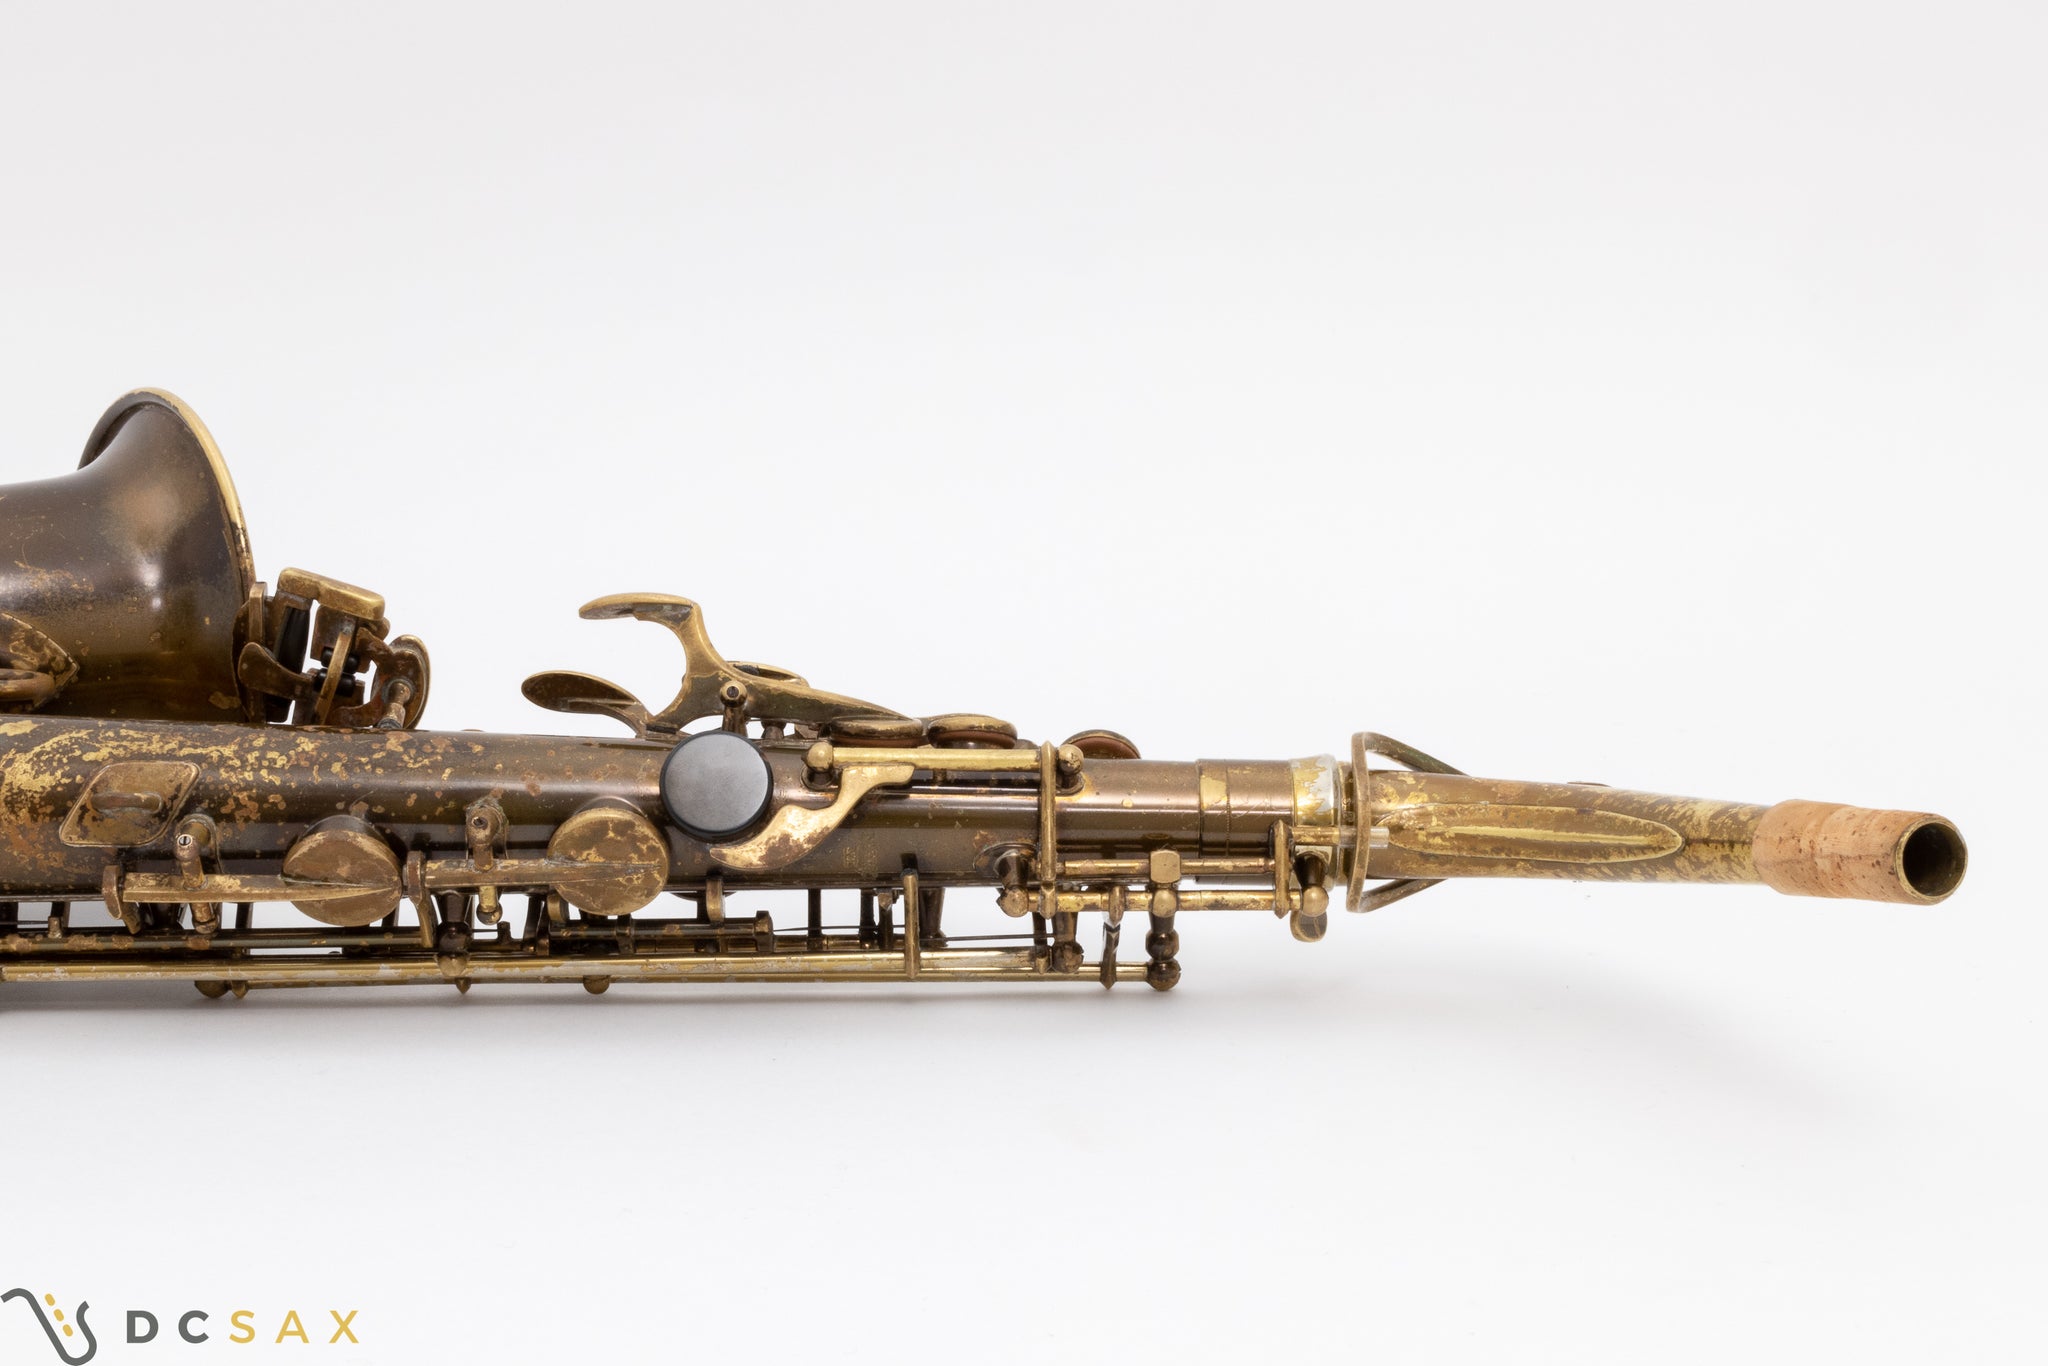 1954 Selmer Mark VI Alto Saxophone, 94% Original Lacquer, Overhaul, Video